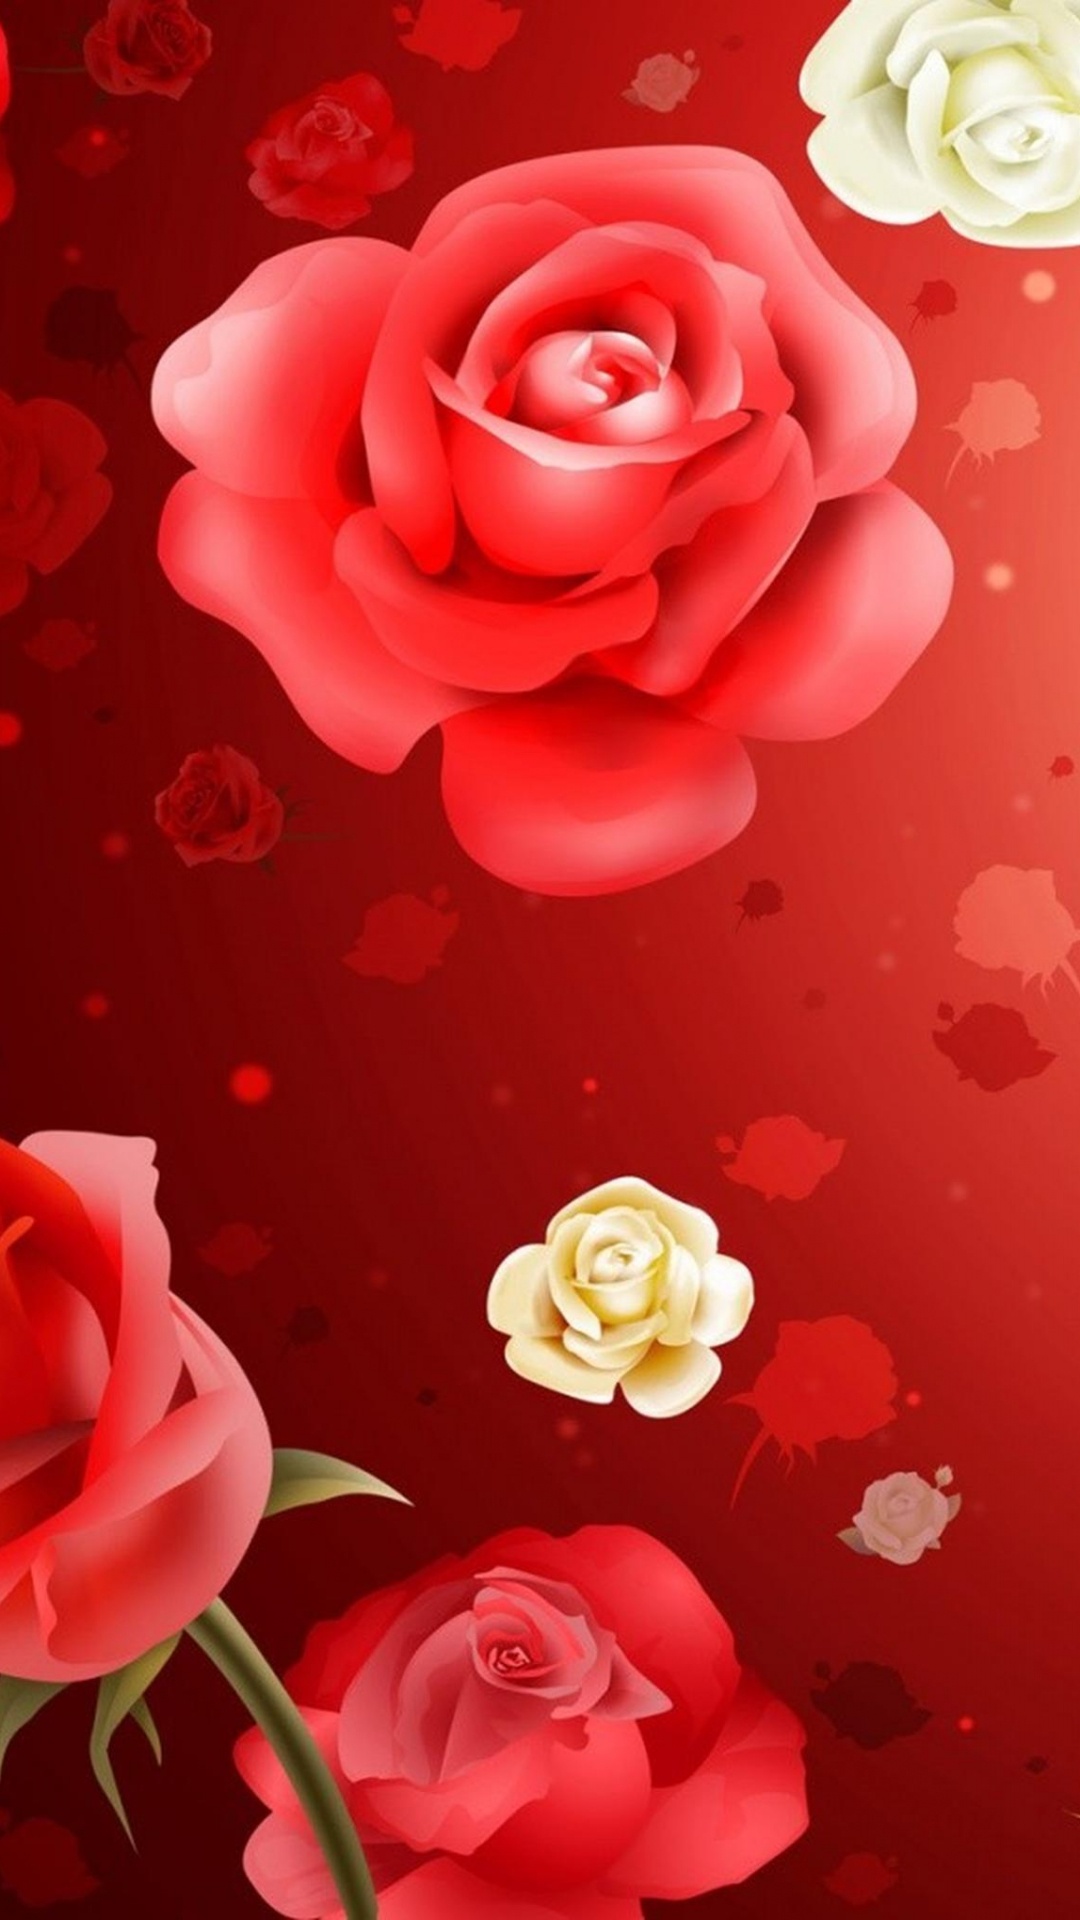 Rosas Blancas y Rosadas Sobre Superficie Roja. Wallpaper in 1080x1920 Resolution